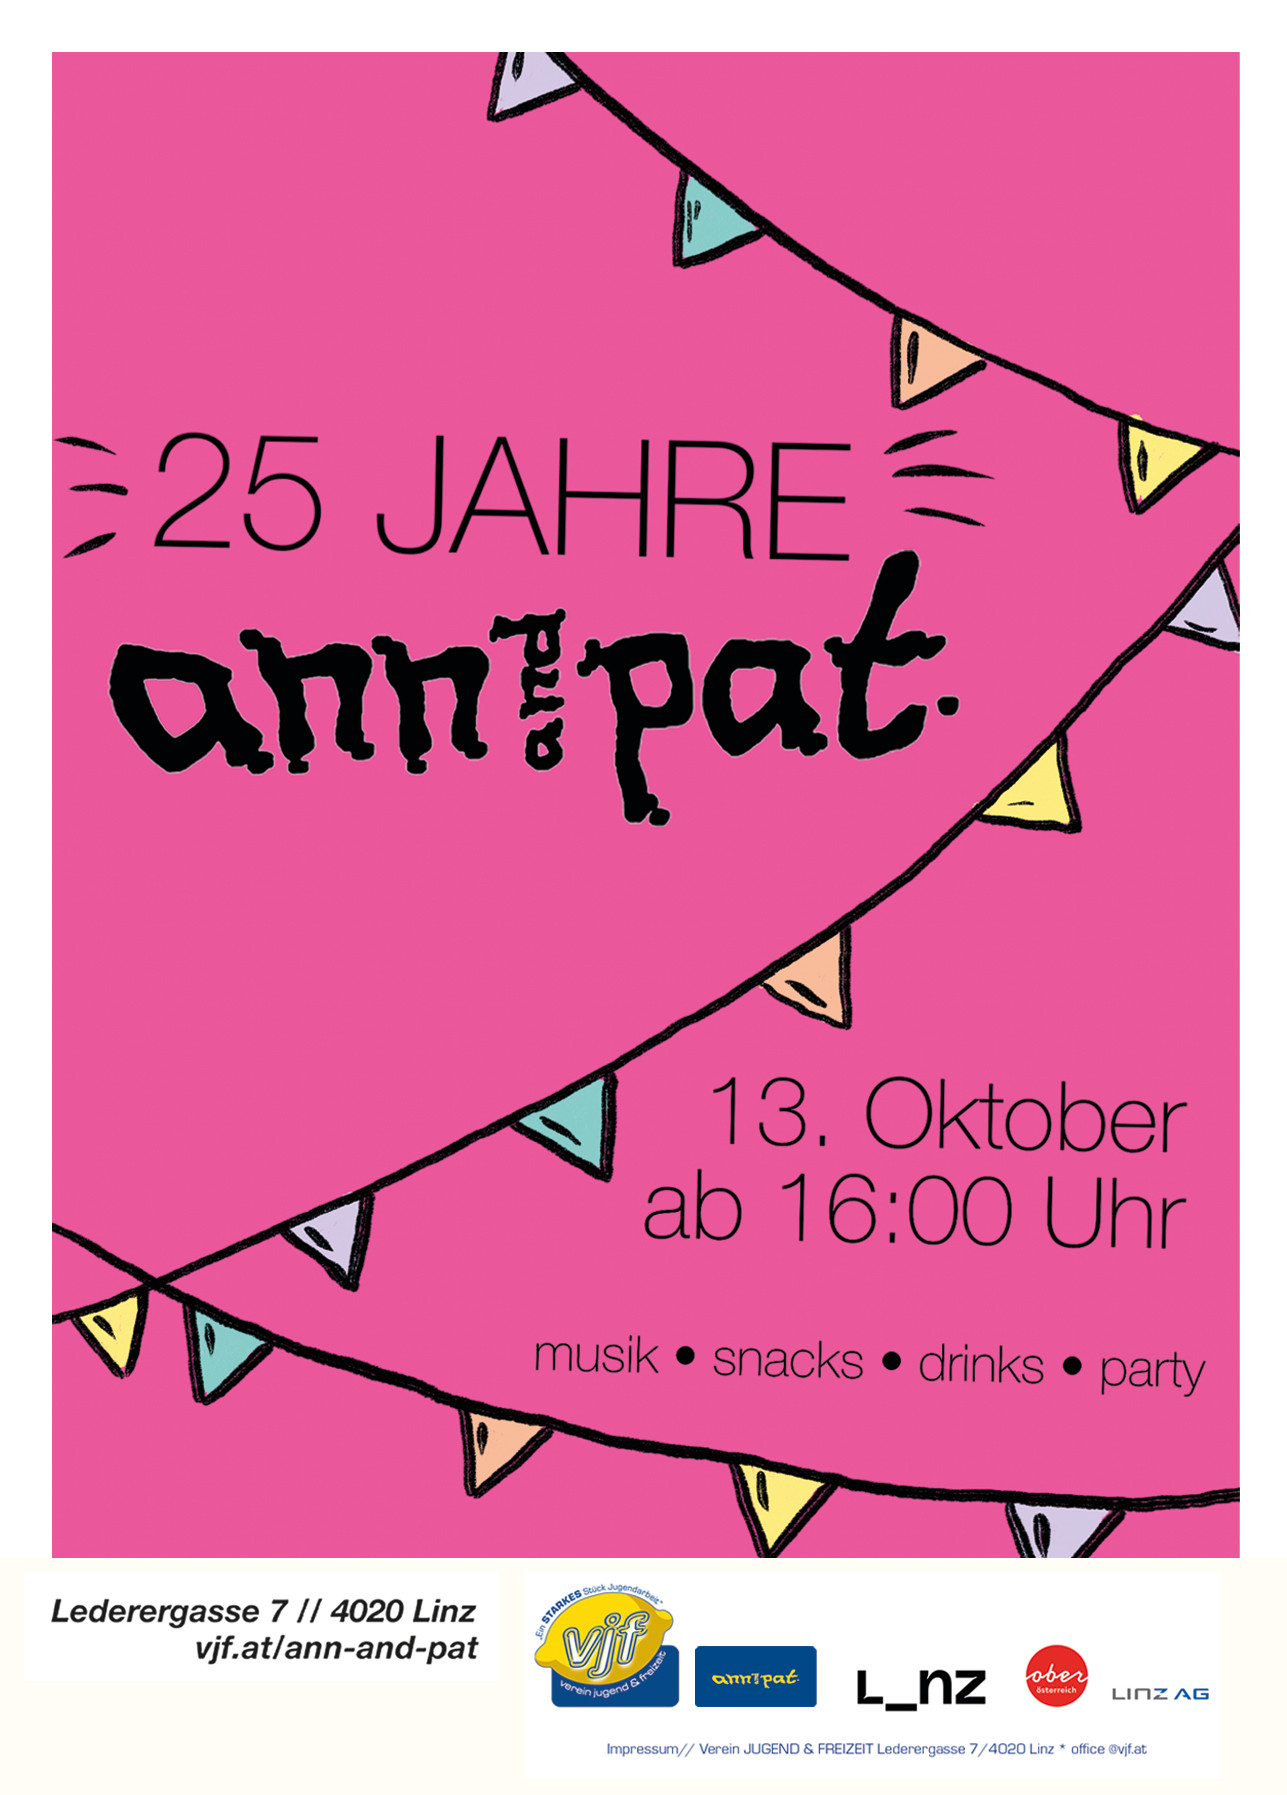 Das Plakat für die 25 Jahre Ann & Pat Feier. Am 13. Oktober ab 16:00. Der Hintergrund ist pink und es winden sich girlanden über das Plakat.